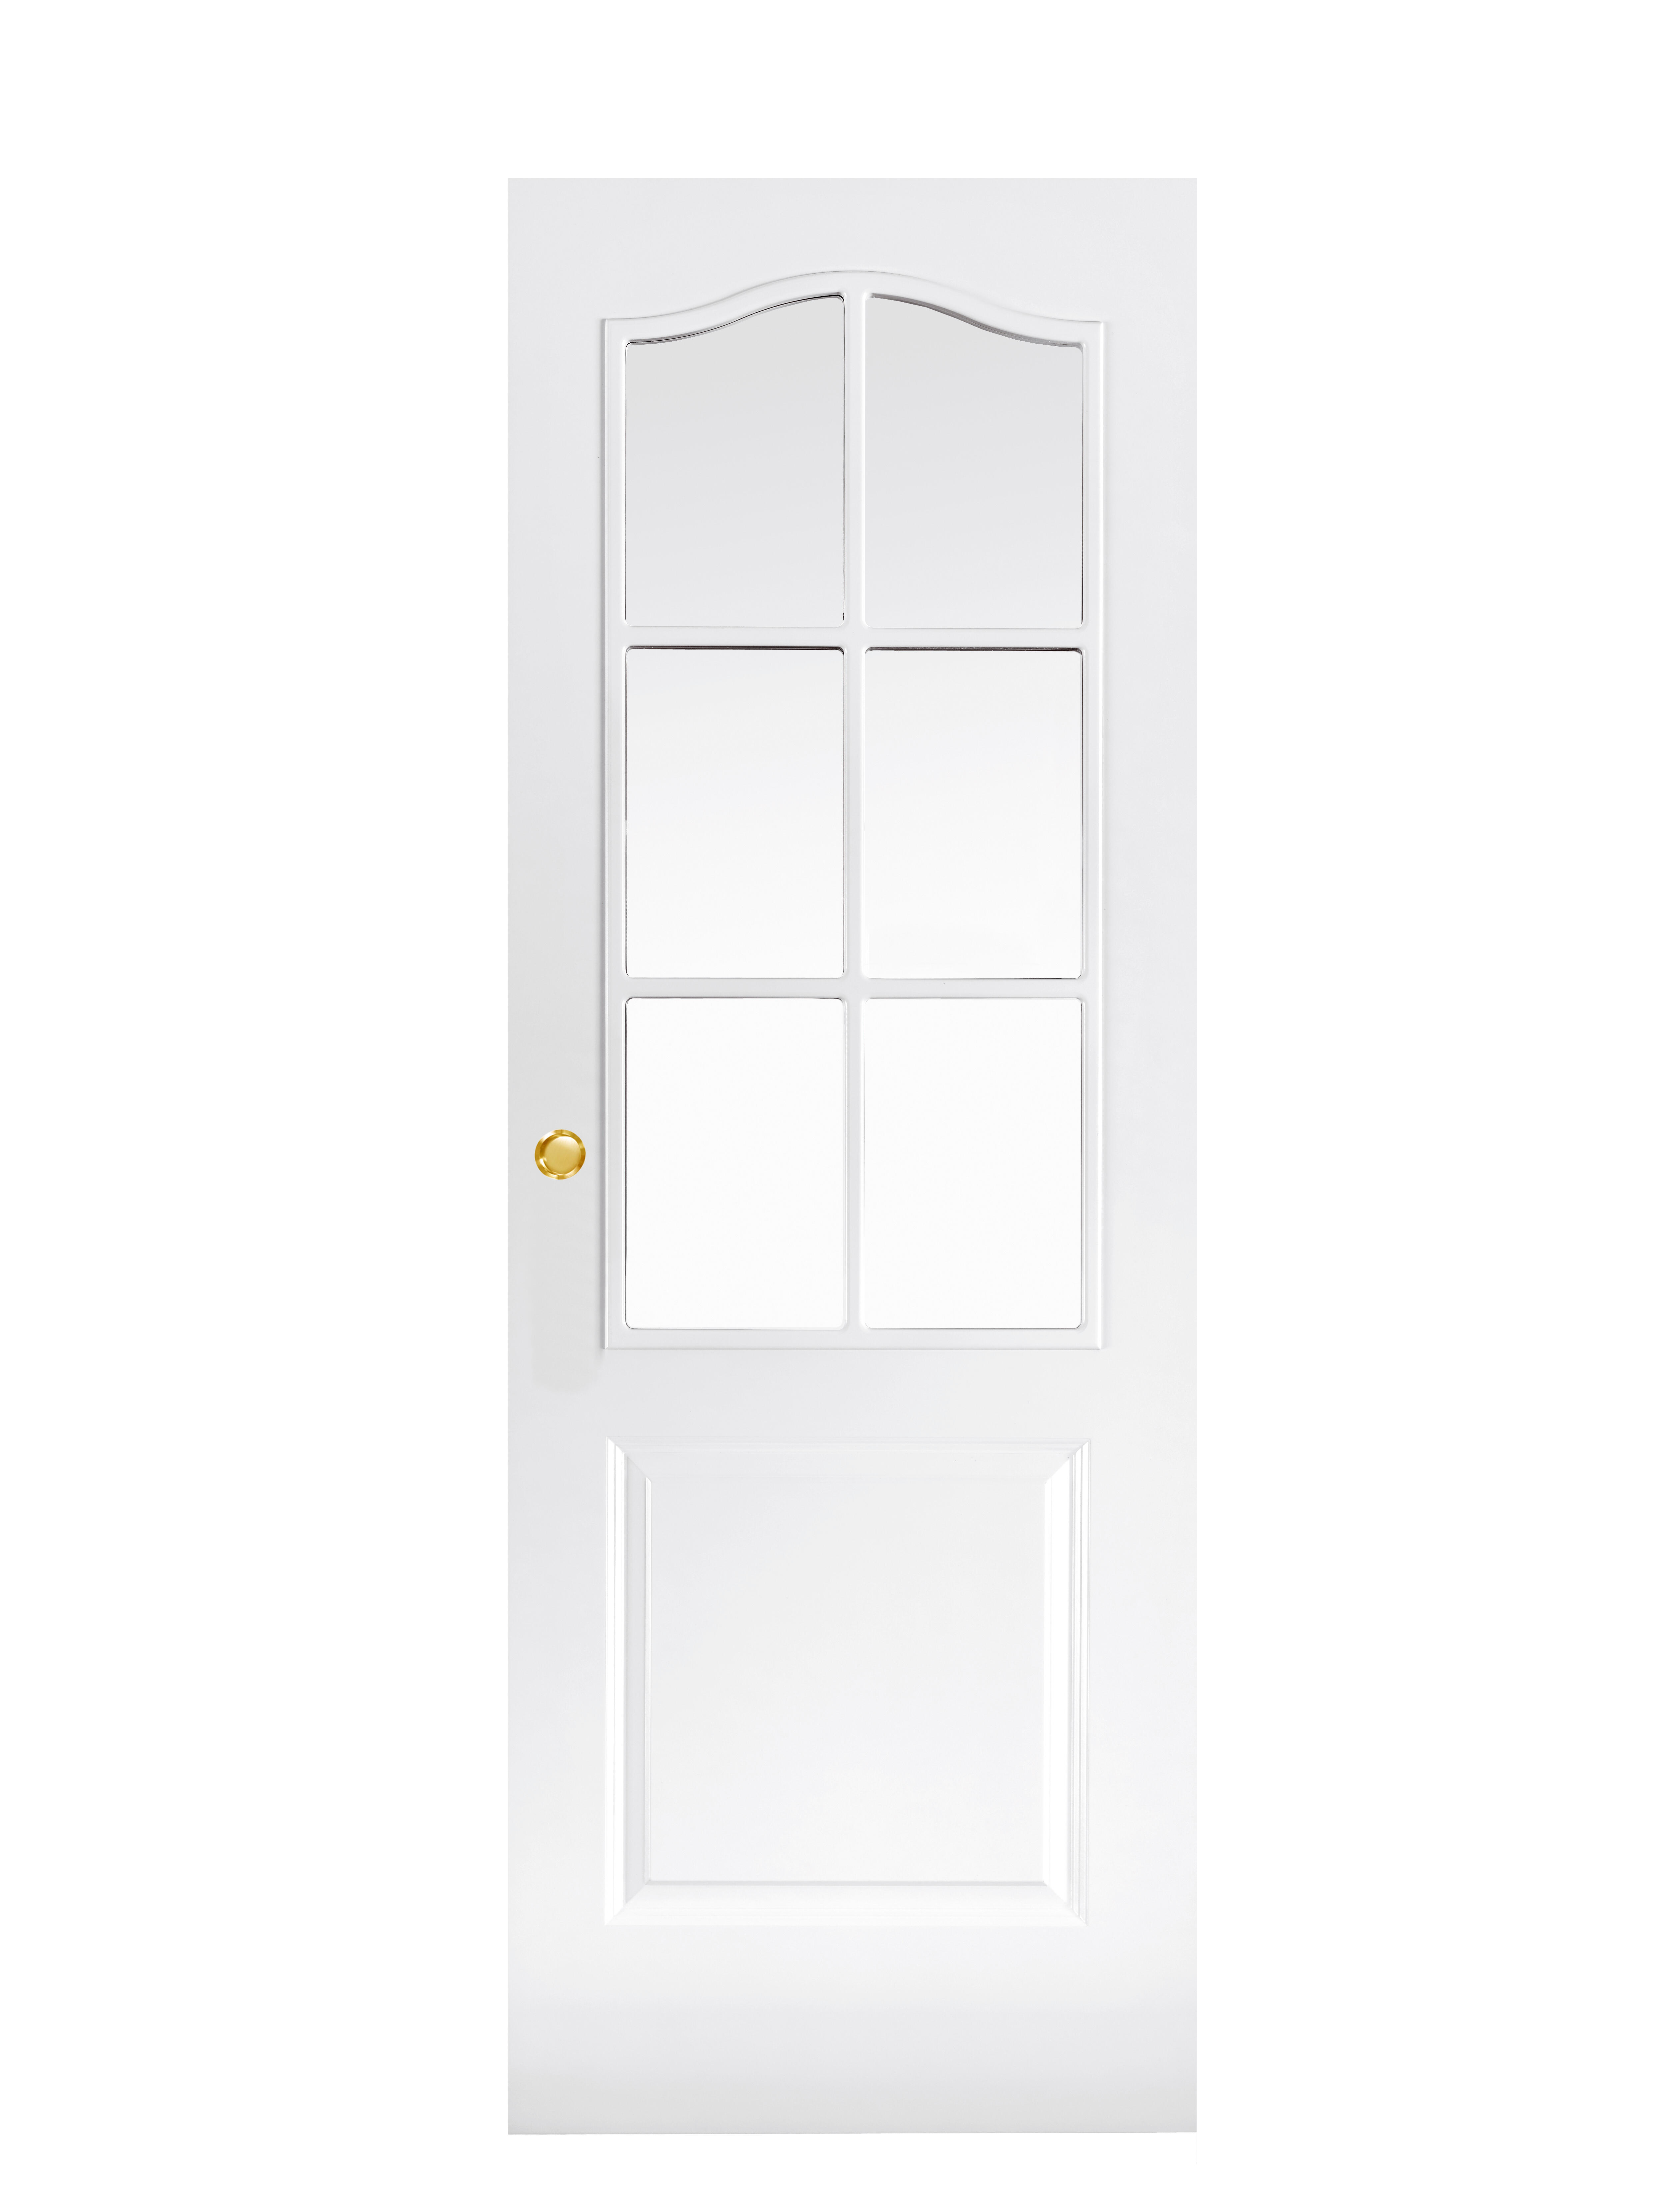 Puerta corredera praga blanca aero blanco con cristal de 82.5cm uñero y condena